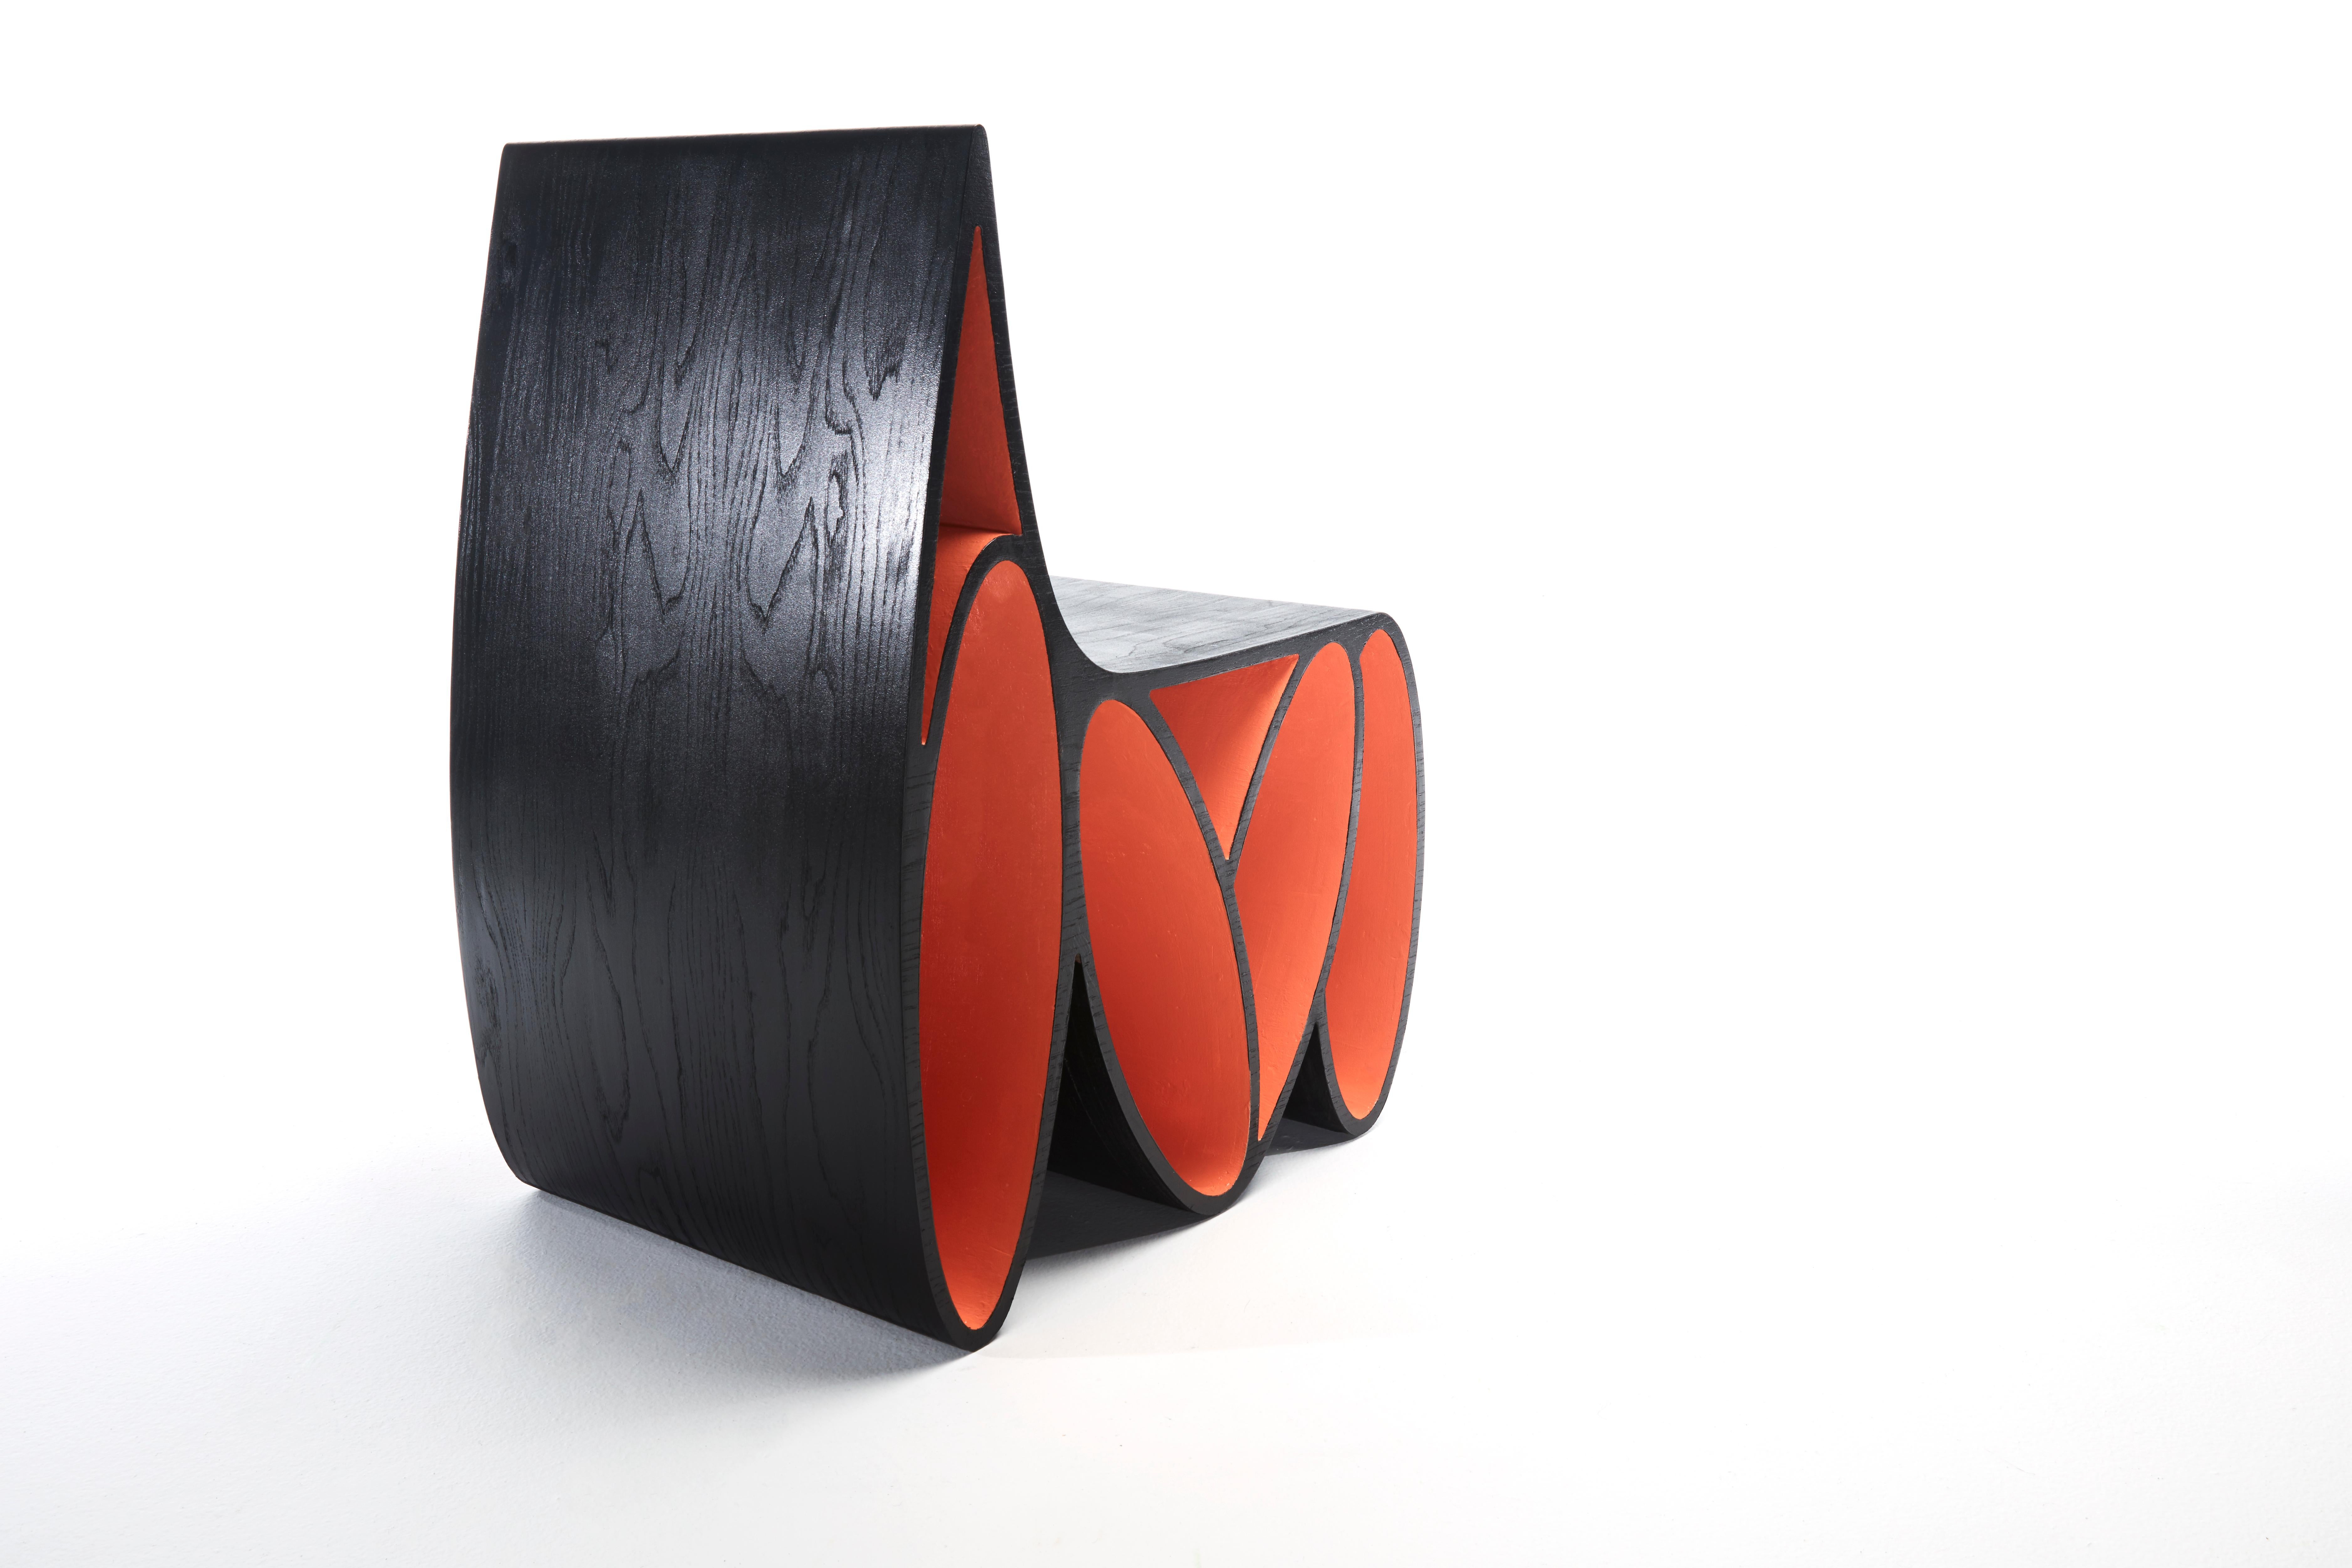 La Loop Chair exprime le mouvement à travers des formes ﬂuides avec une surface d'assise qui se courbe vers le bas de façon transparente pour envelopper une série de boucles qui créent une base de soutien. Le siège et les formes circulaires donnent